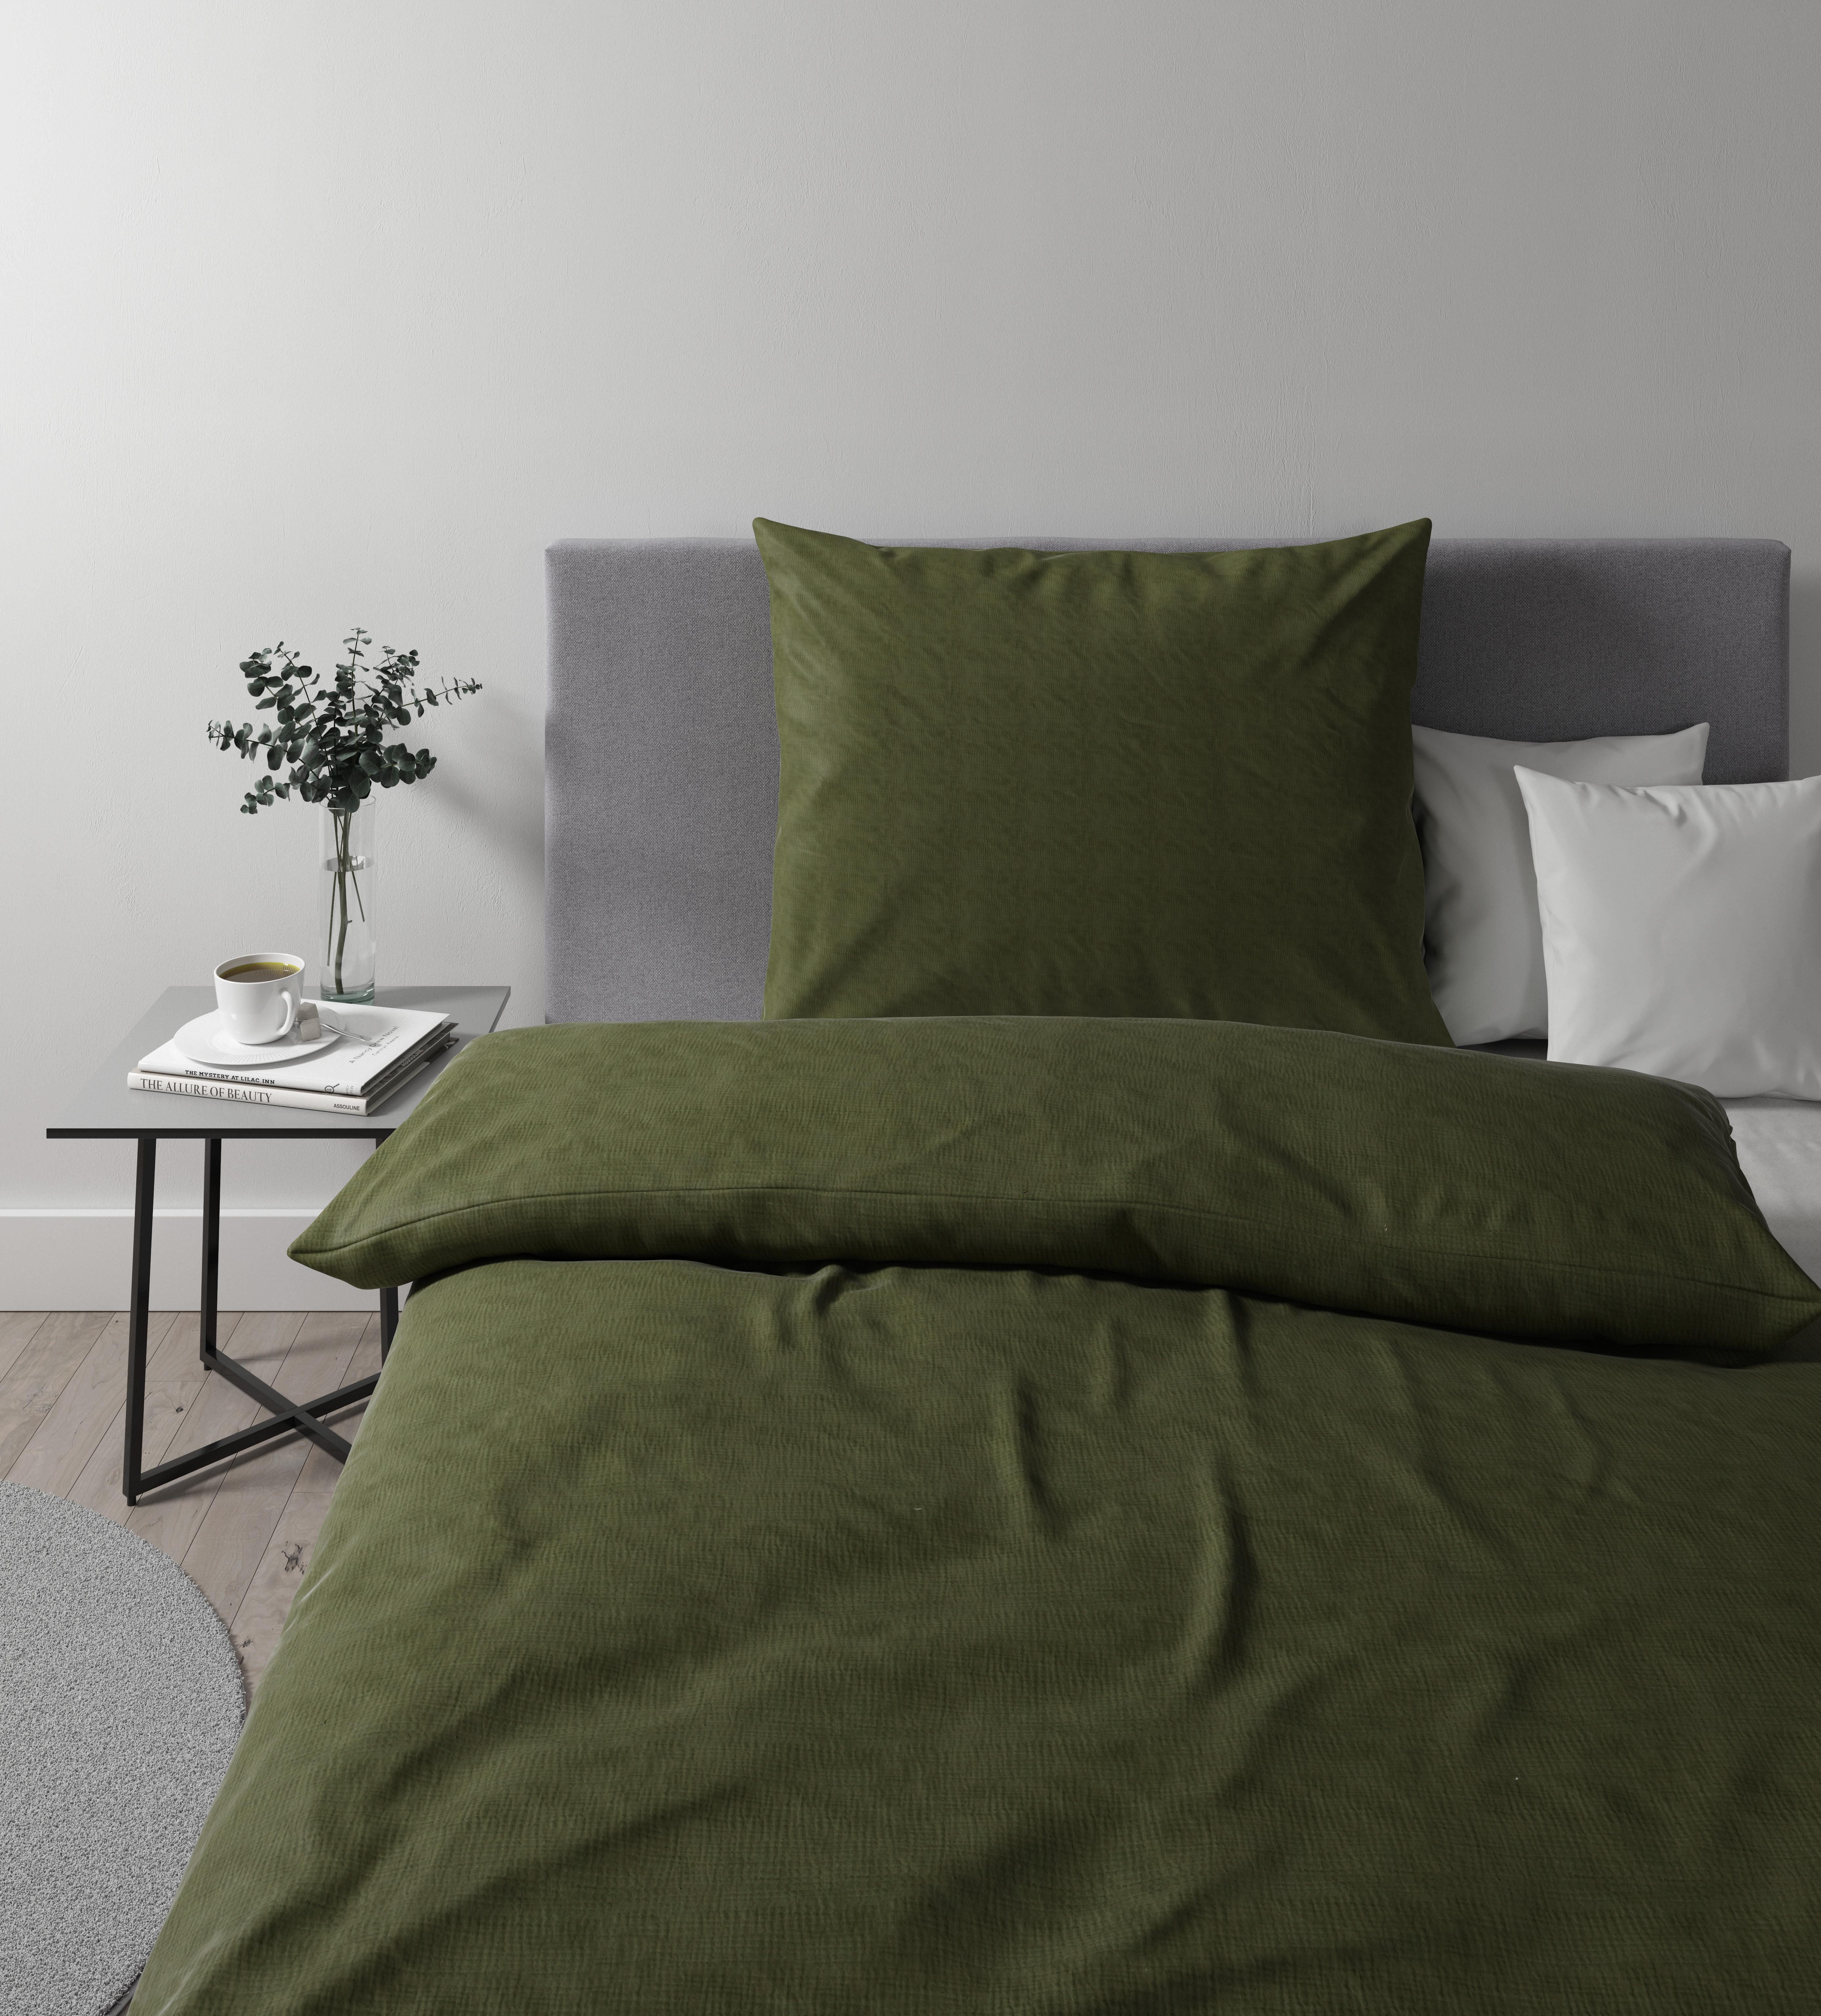 Povlečení Melissa, 140/200cm - olivově zelená, Moderní, textil (140/200cm) - Premium Living